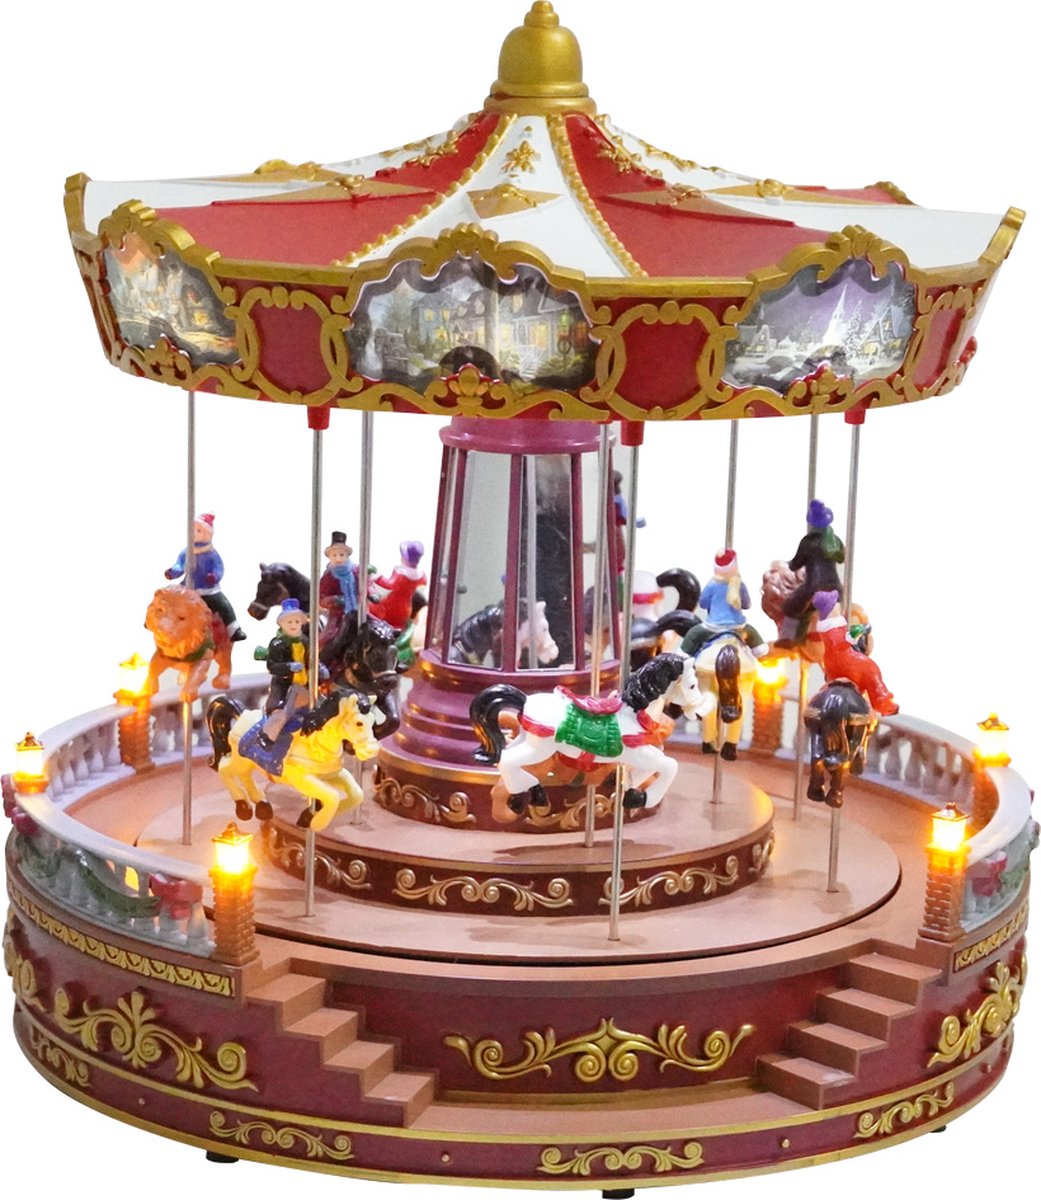 Kristmar Rosie’s draaiende carousel met LED-verlichting en muziek